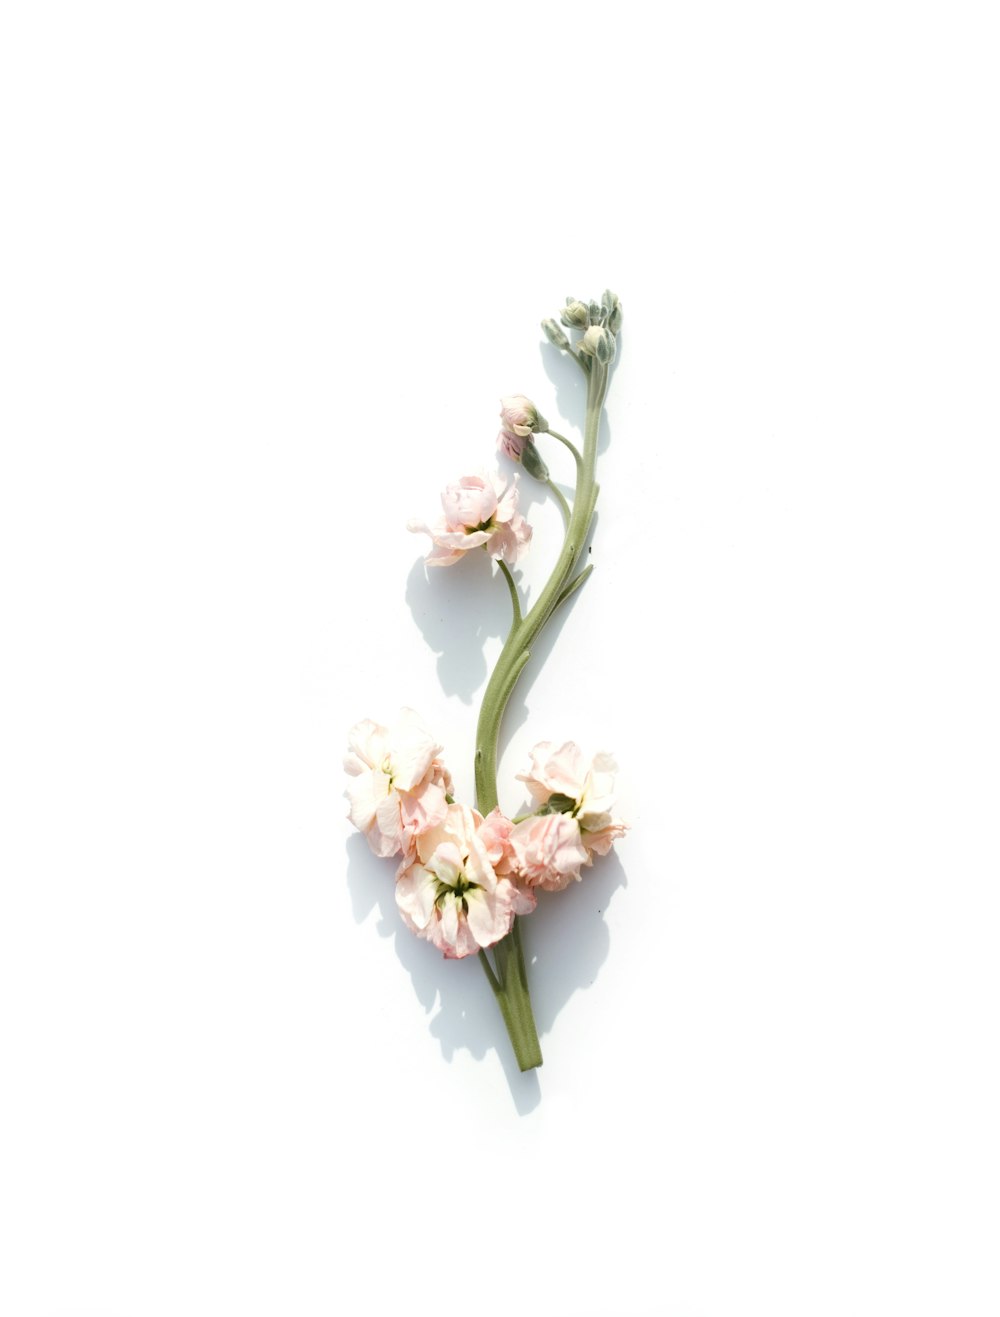 flor de pétalos rosados sobre fondo blanco